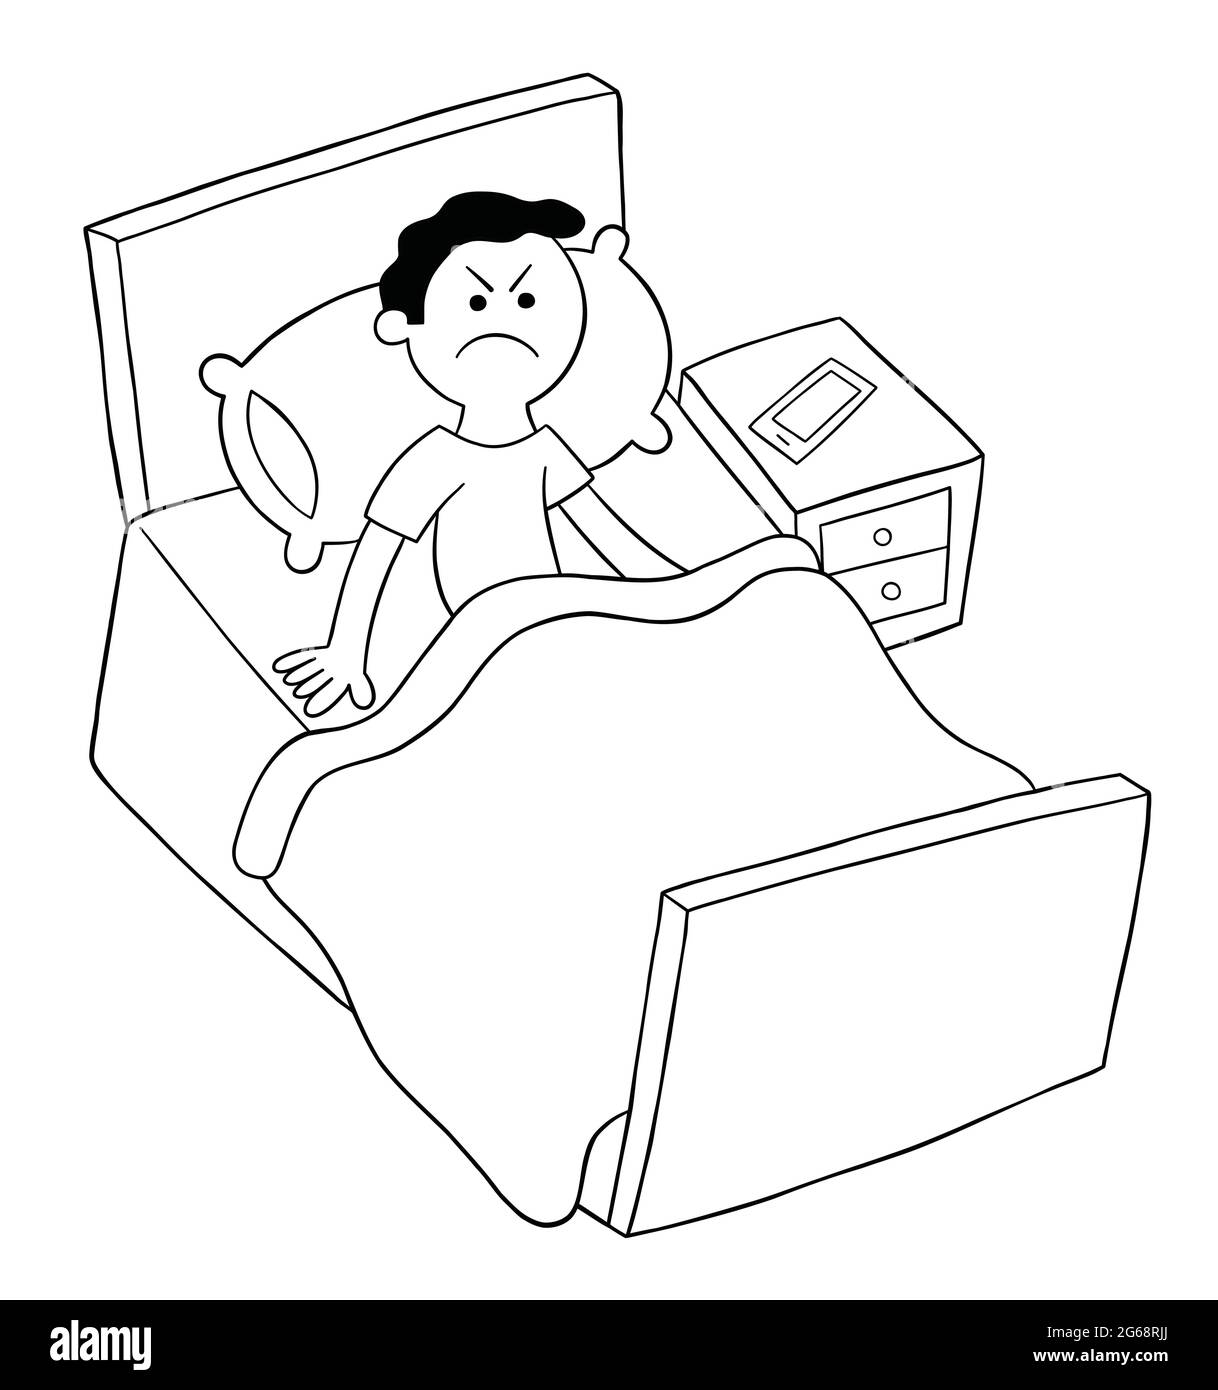 Homme de dessin animé est dans le lit mais en colère, ne peut pas dormir,  illustration vectorielle. Contour noir et couleur blanche Image Vectorielle  Stock - Alamy